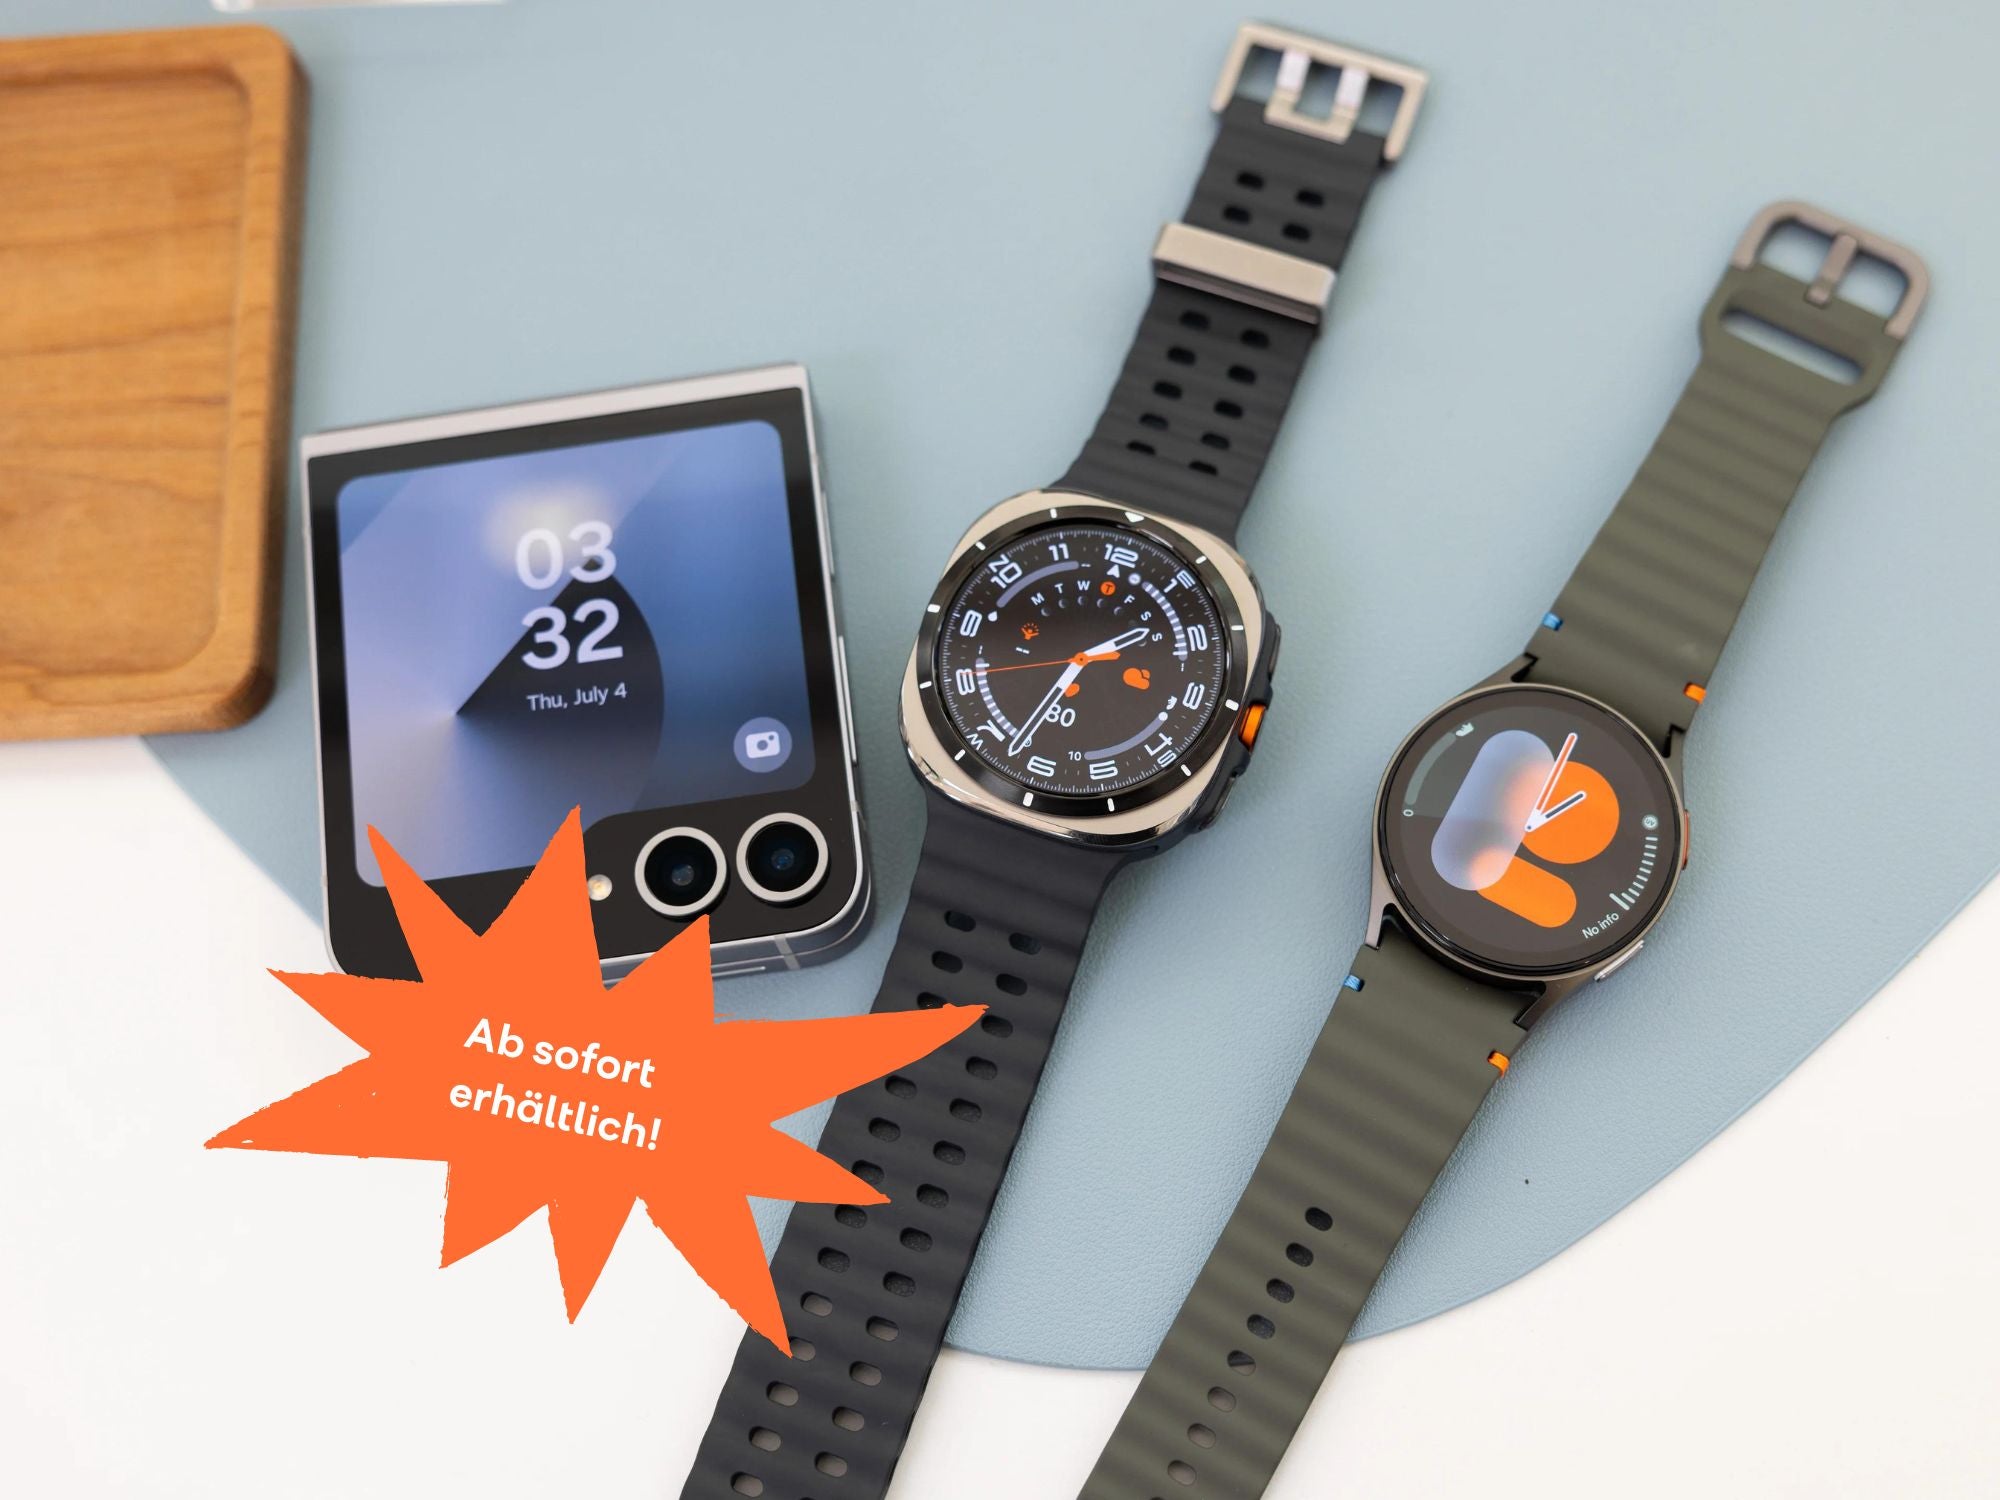 Neues von Samsung - Smartwatches, Kopfhörer und Foldables ab sofort erhältlich